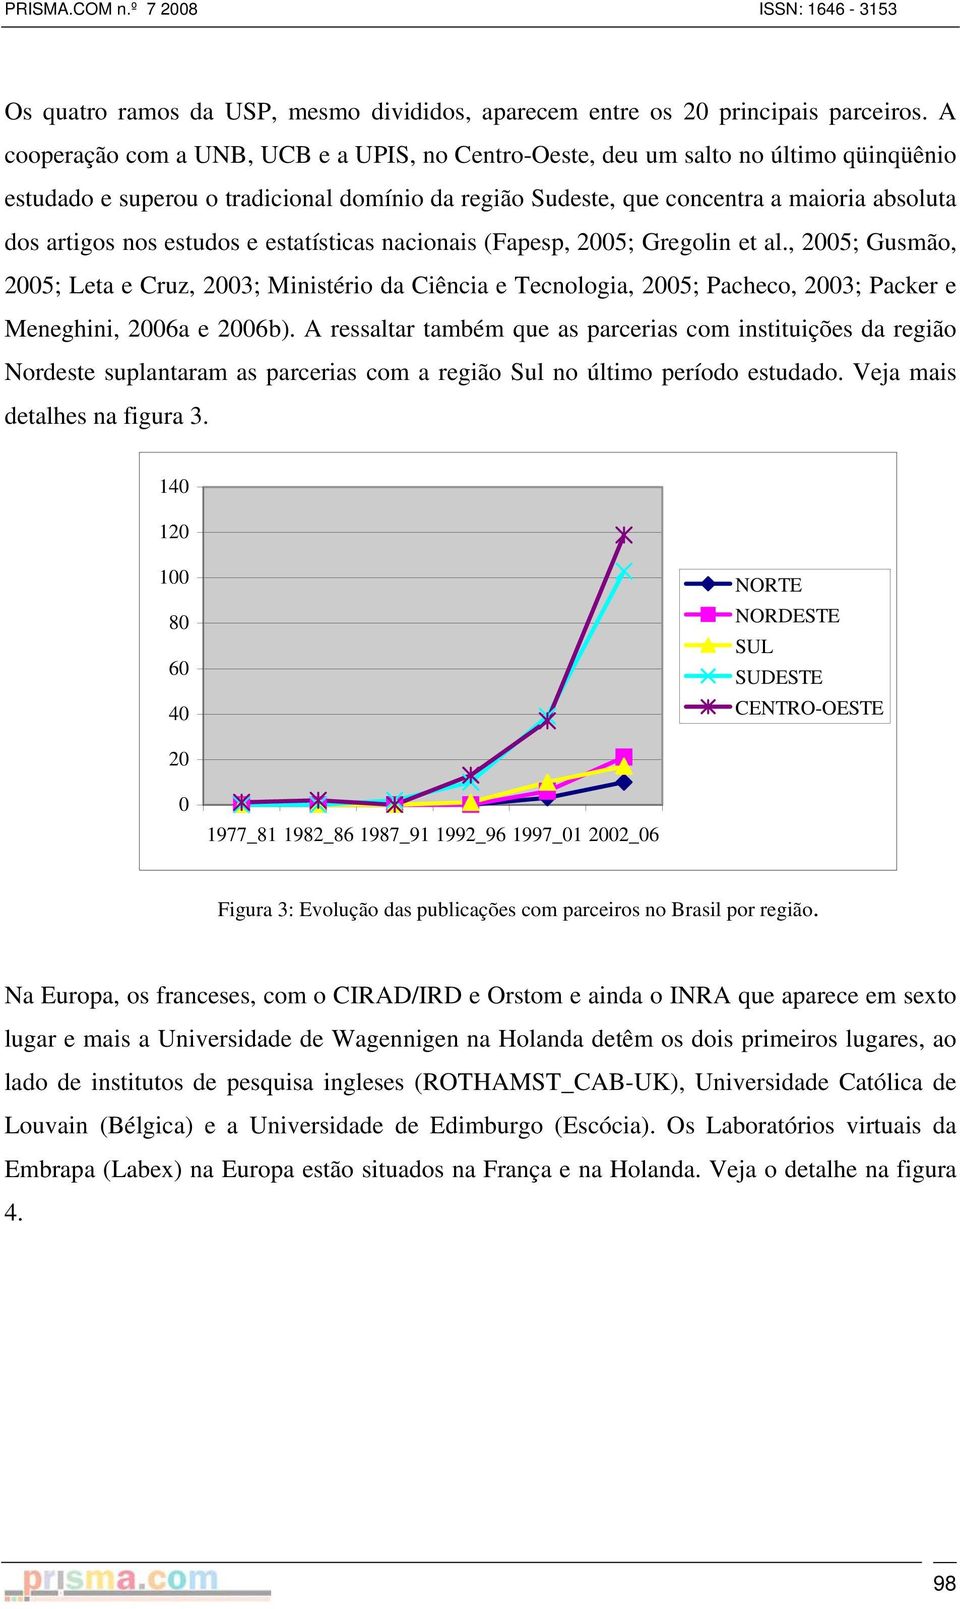 estudos e estatísticas nacionais (Fapesp, 2005; Gregolin et al., 2005; Gusmão, 2005; Leta e Cruz, 2003; Ministério da Ciência e Tecnologia, 2005; Pacheco, 2003; Packer e Meneghini, 2006a e 2006b).